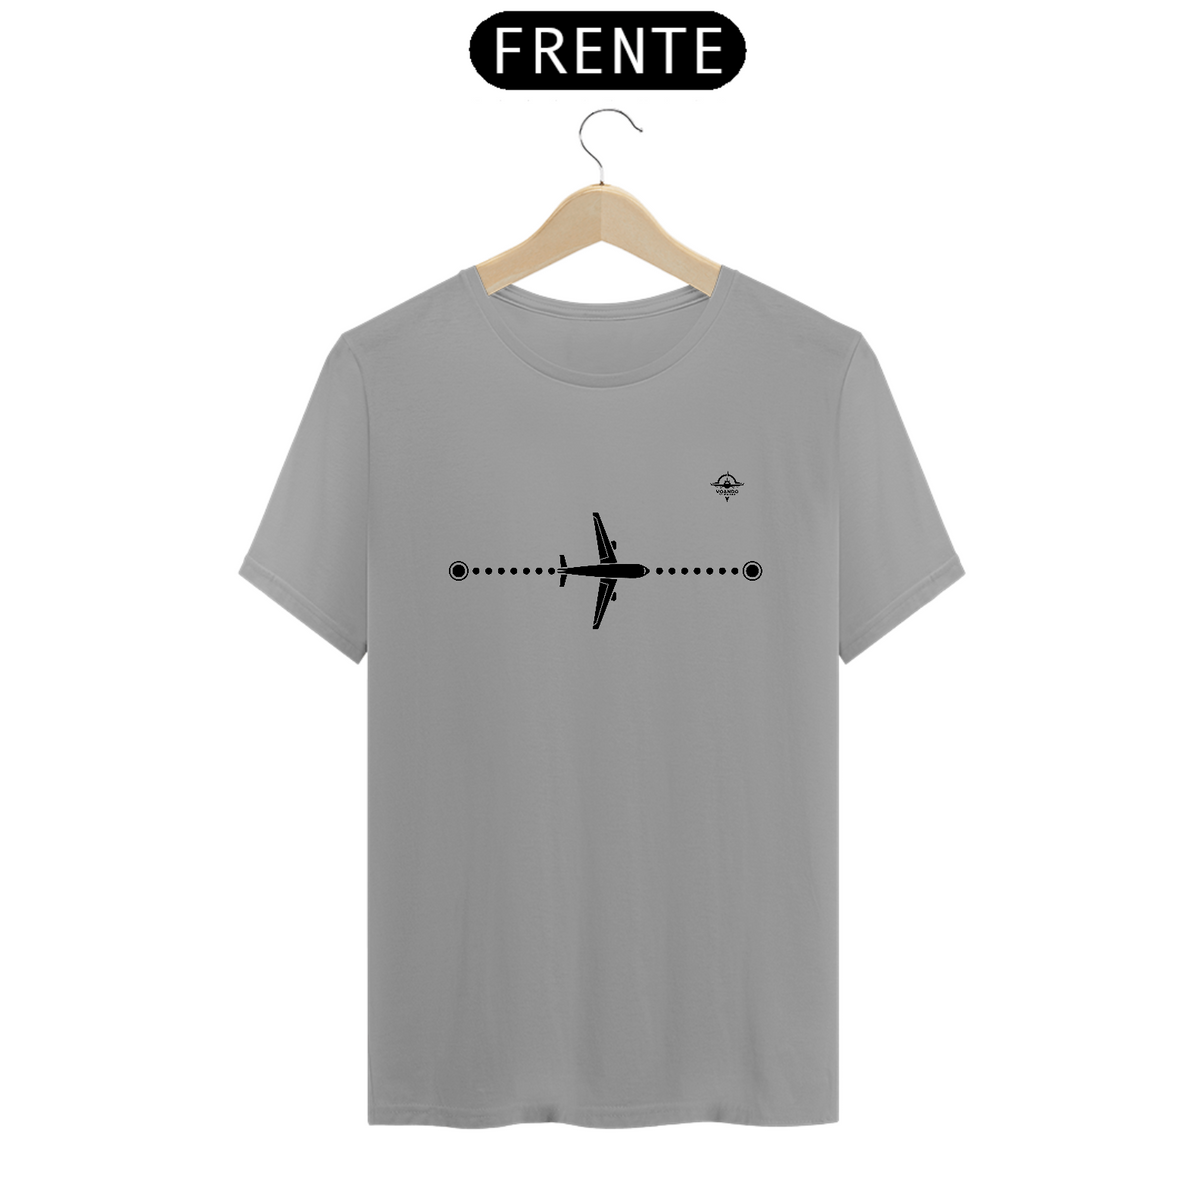 Nome do produto: Camiseta minimalista avião